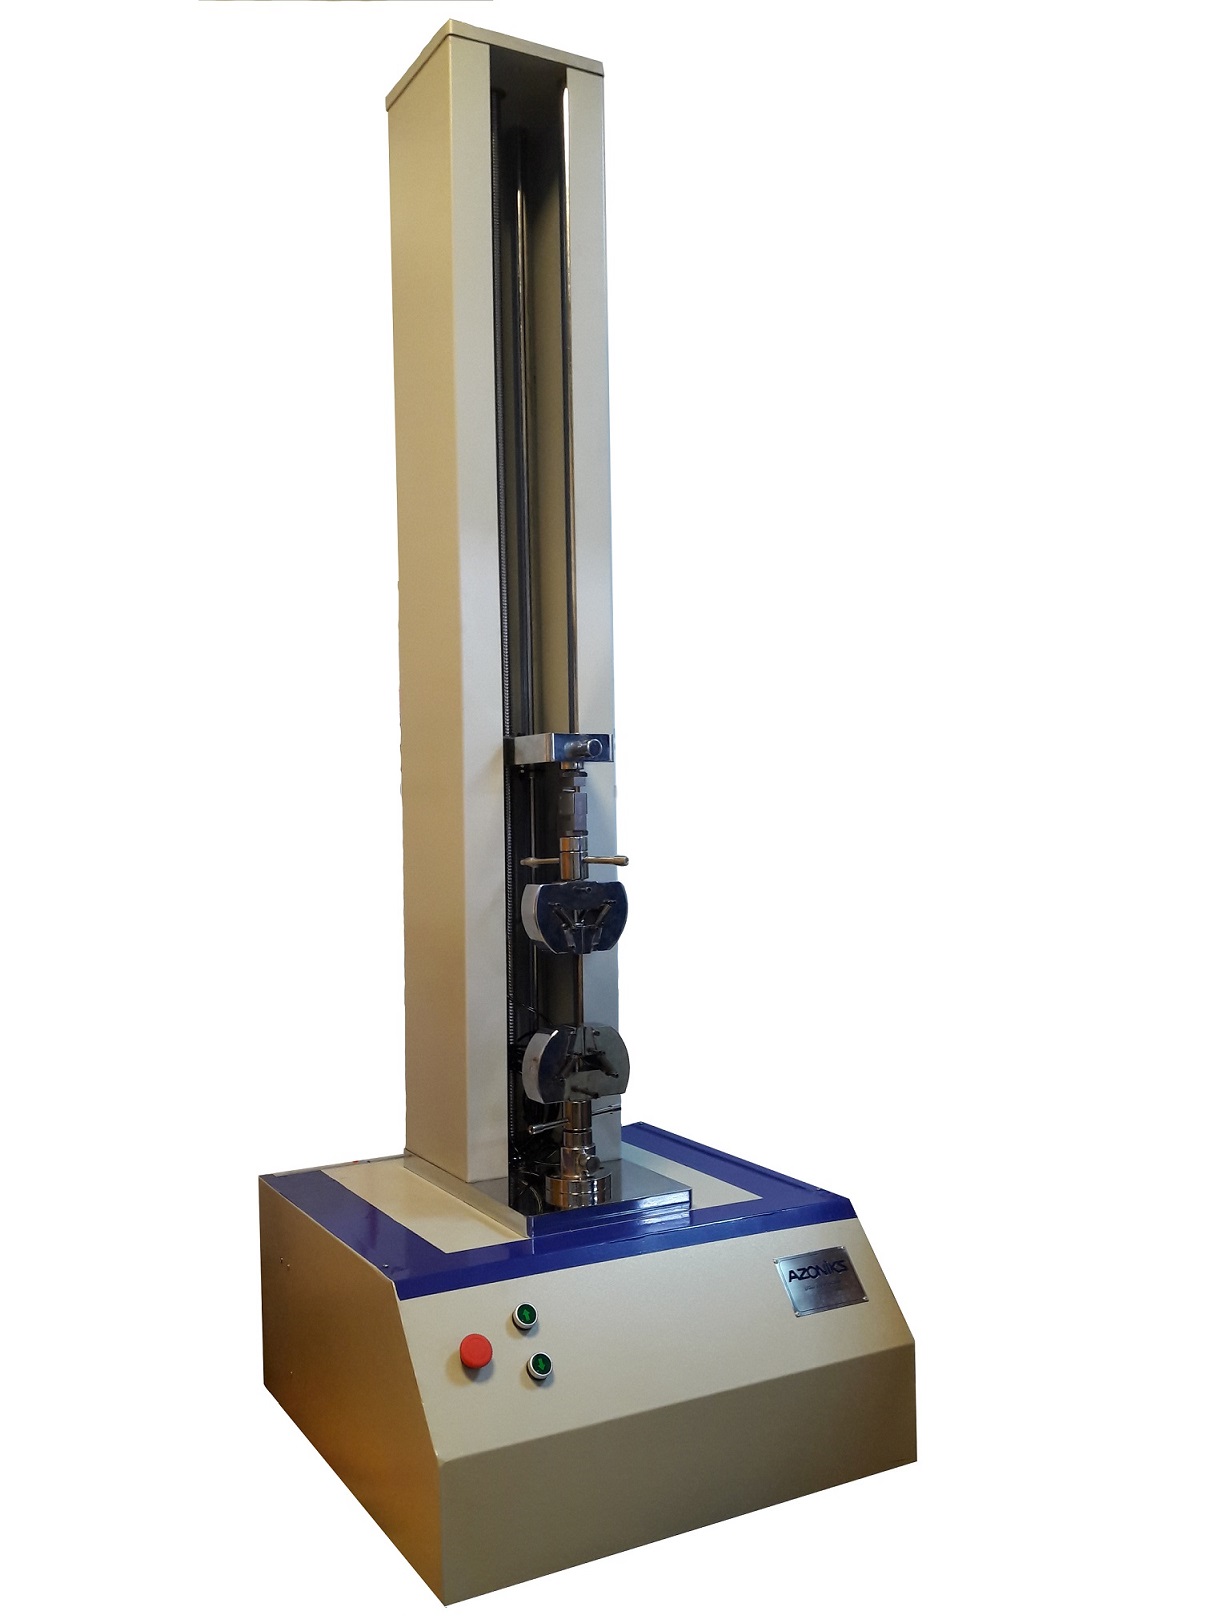 دستگاه تست کشش و فشار یونیورسال سرو الکتریکال 1کیلونیوتن (100کیلوگرم)